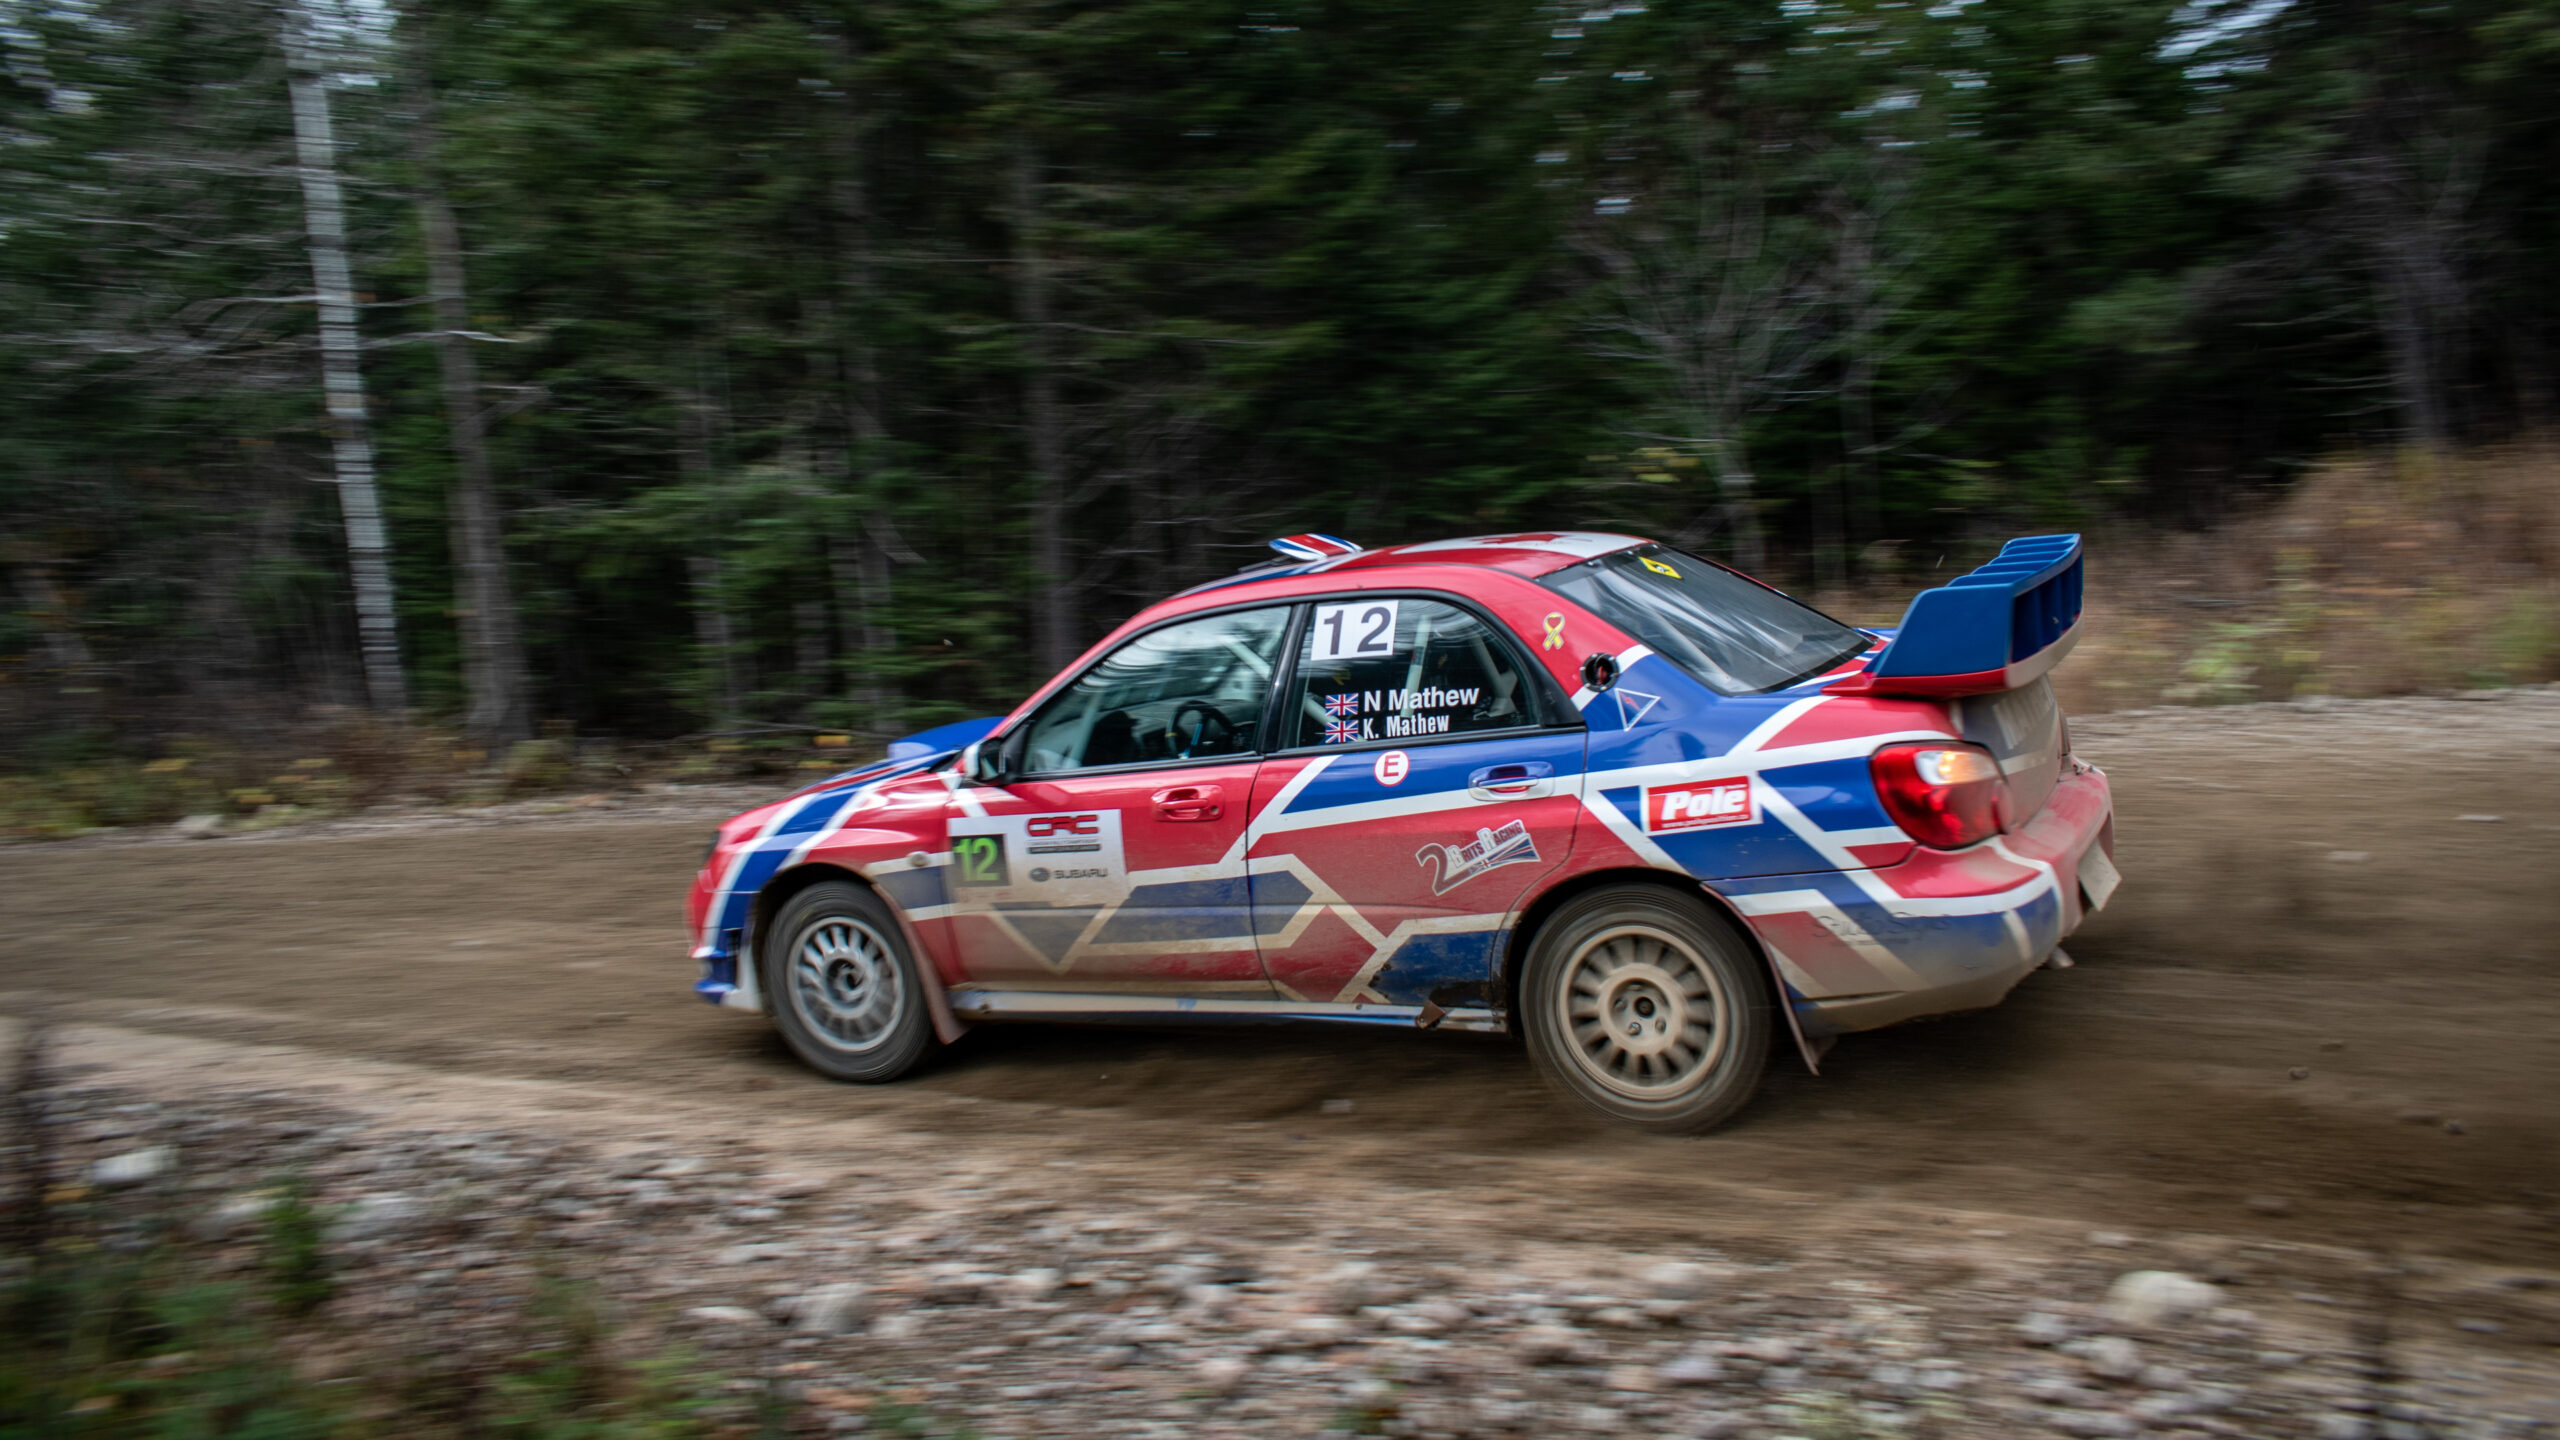 Nick Mathew & Kelly Mathew – Rallye Charlevoix 2021